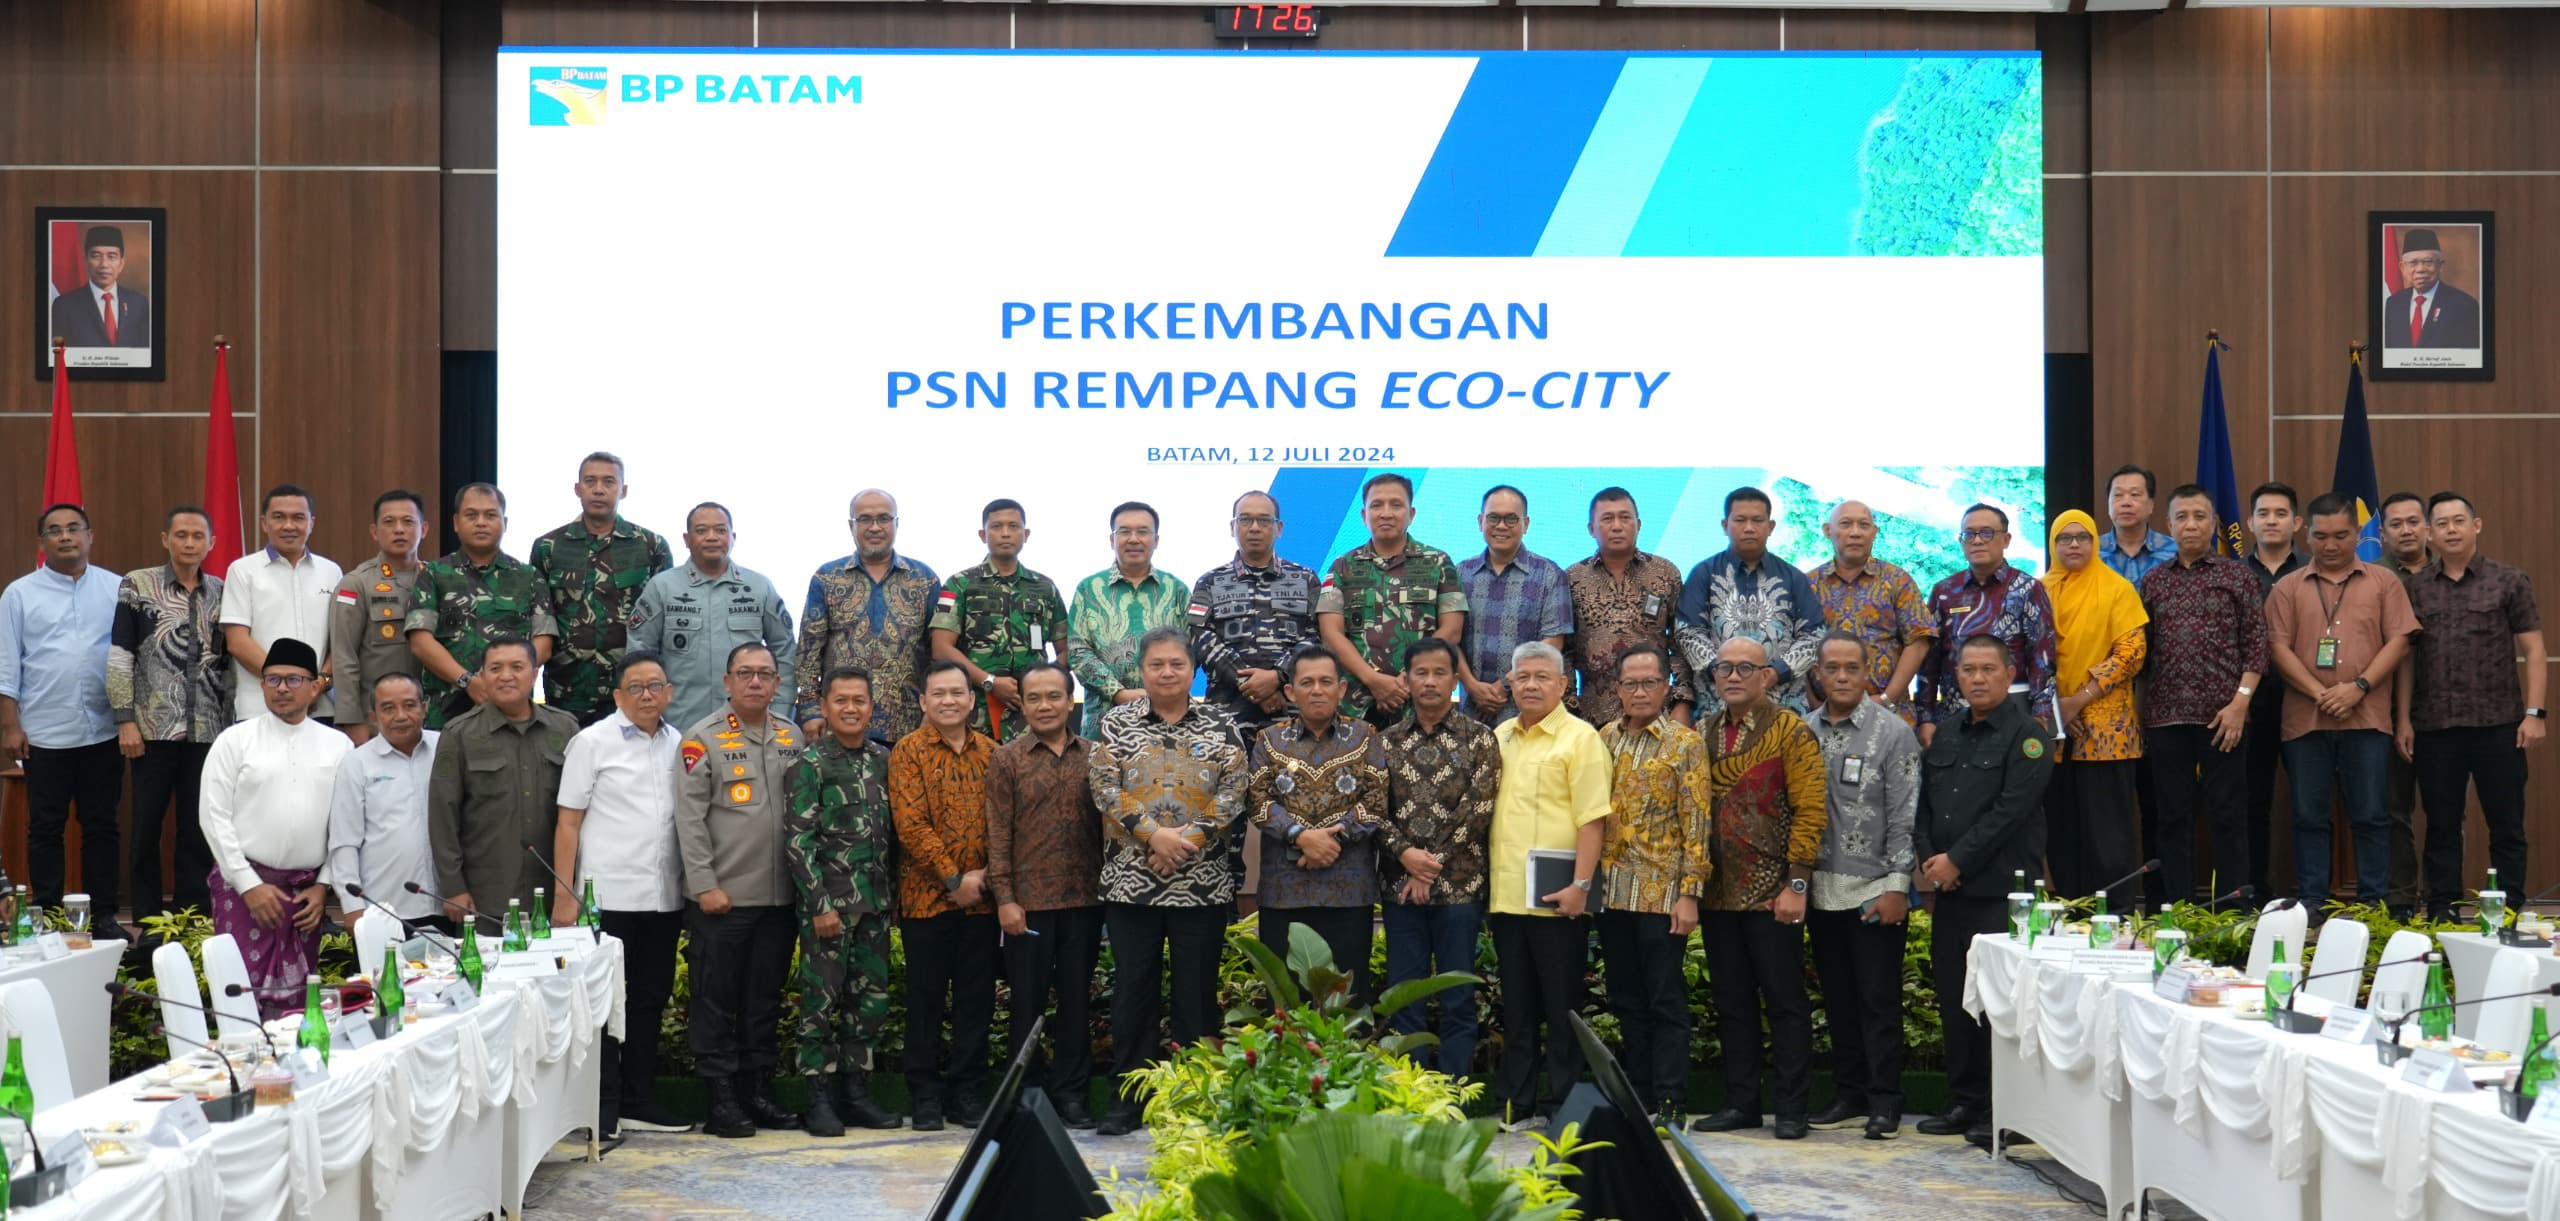 Dipimpin Menko Perekonomian RI, BP Batam Gelar Rakor PSN Rempang Eco-City